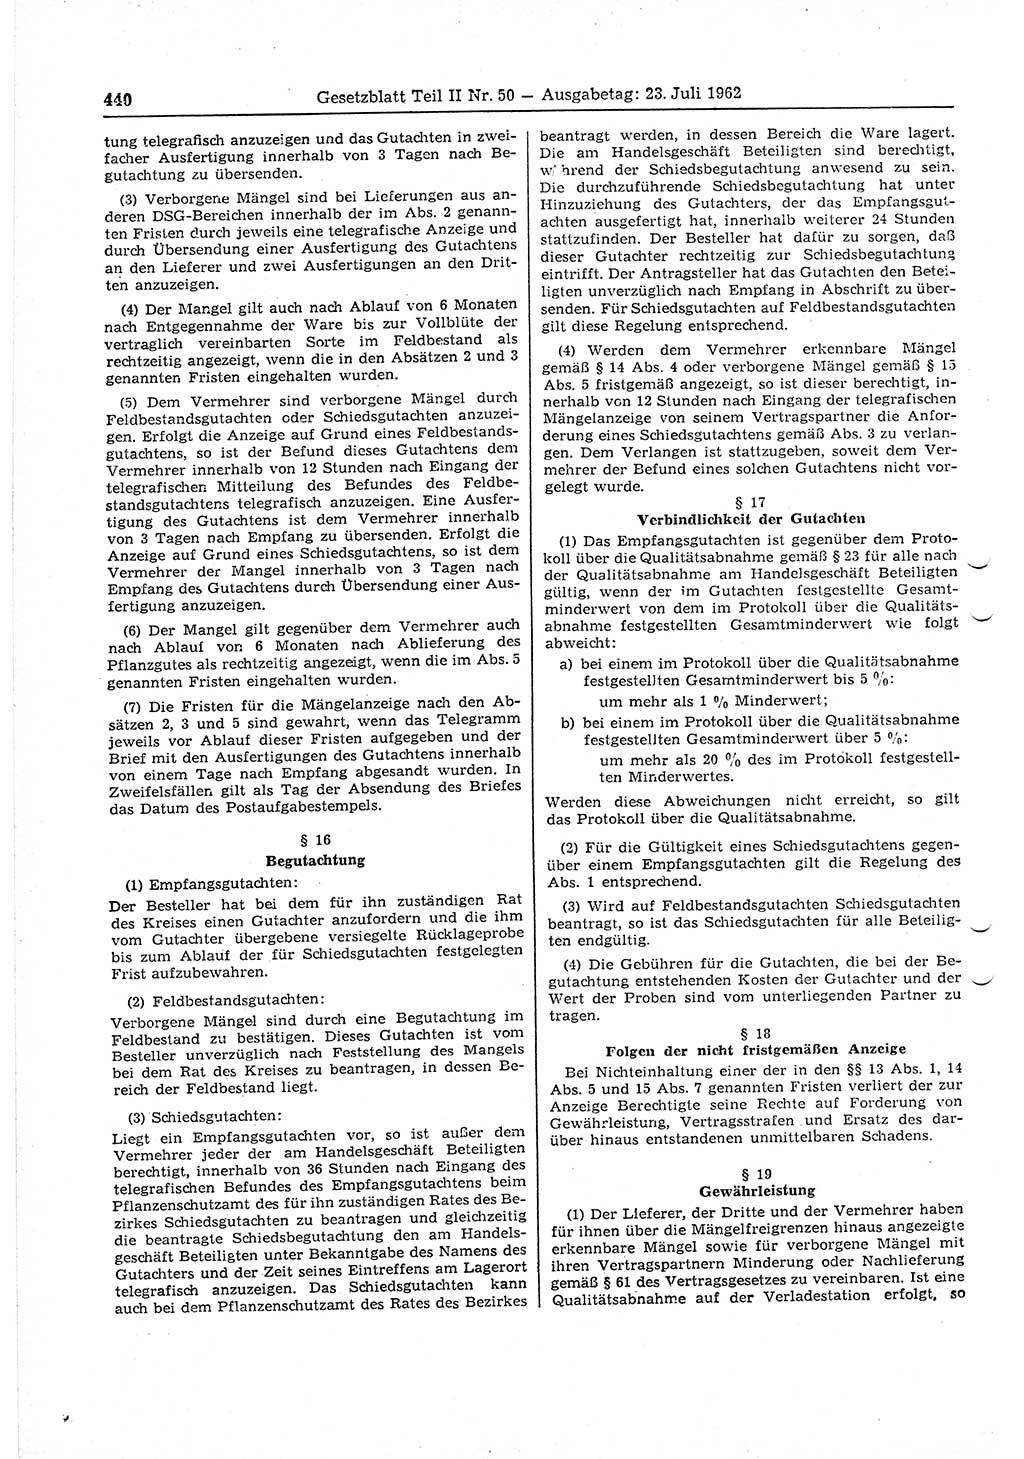 Gesetzblatt (GBl.) der Deutschen Demokratischen Republik (DDR) Teil ⅠⅠ 1962, Seite 440 (GBl. DDR ⅠⅠ 1962, S. 440)